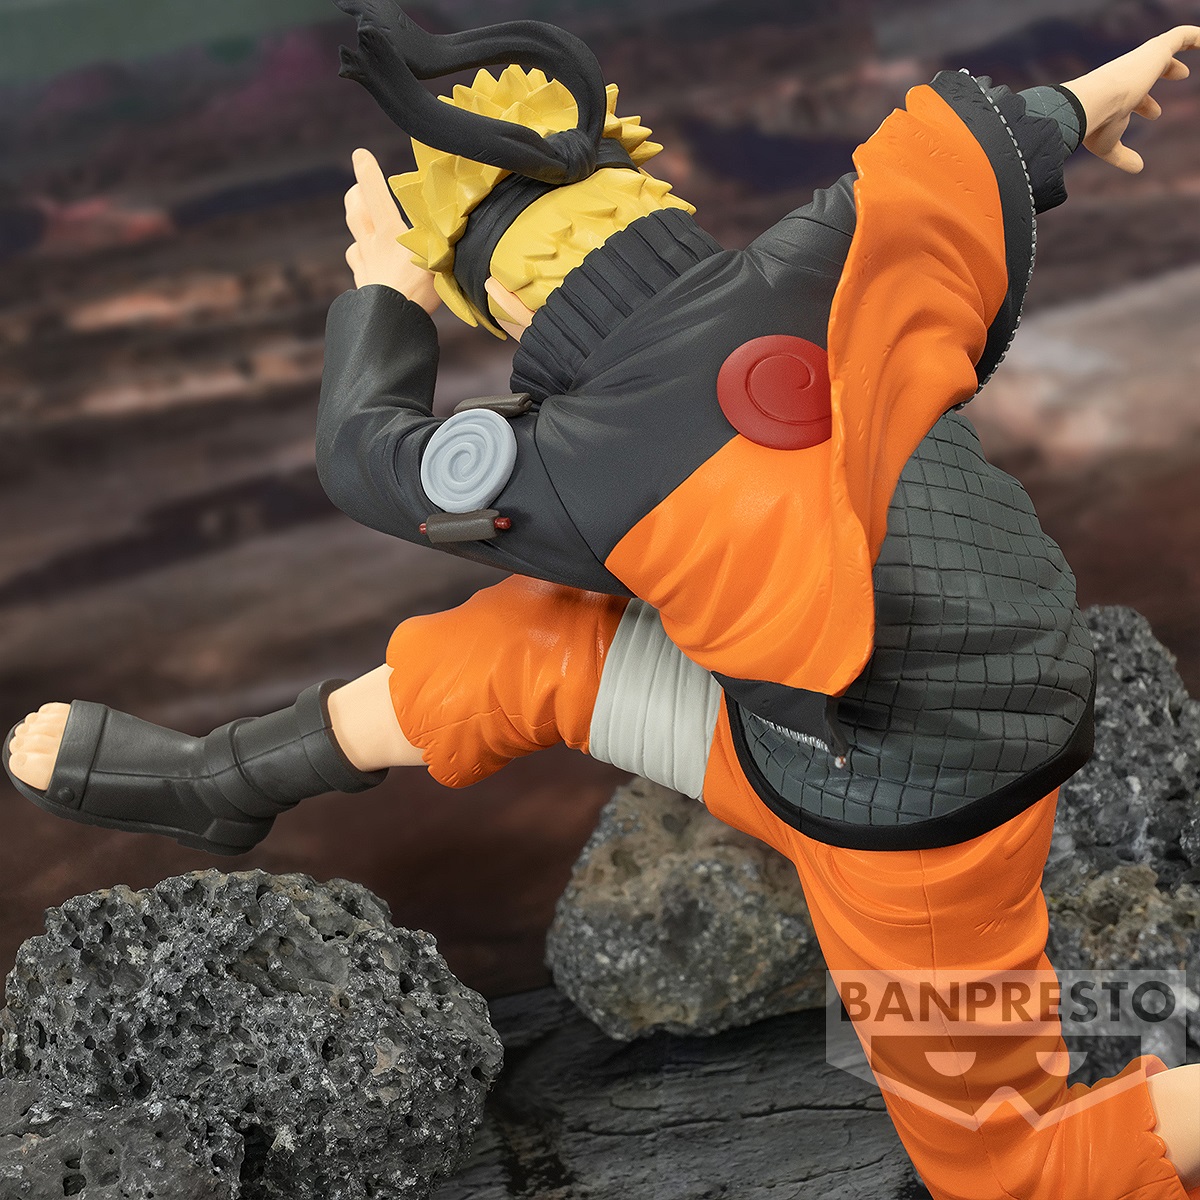 Naruto Uzumaki Vibration Stars Prize Figure - Naruto Shippuden - IGN Store